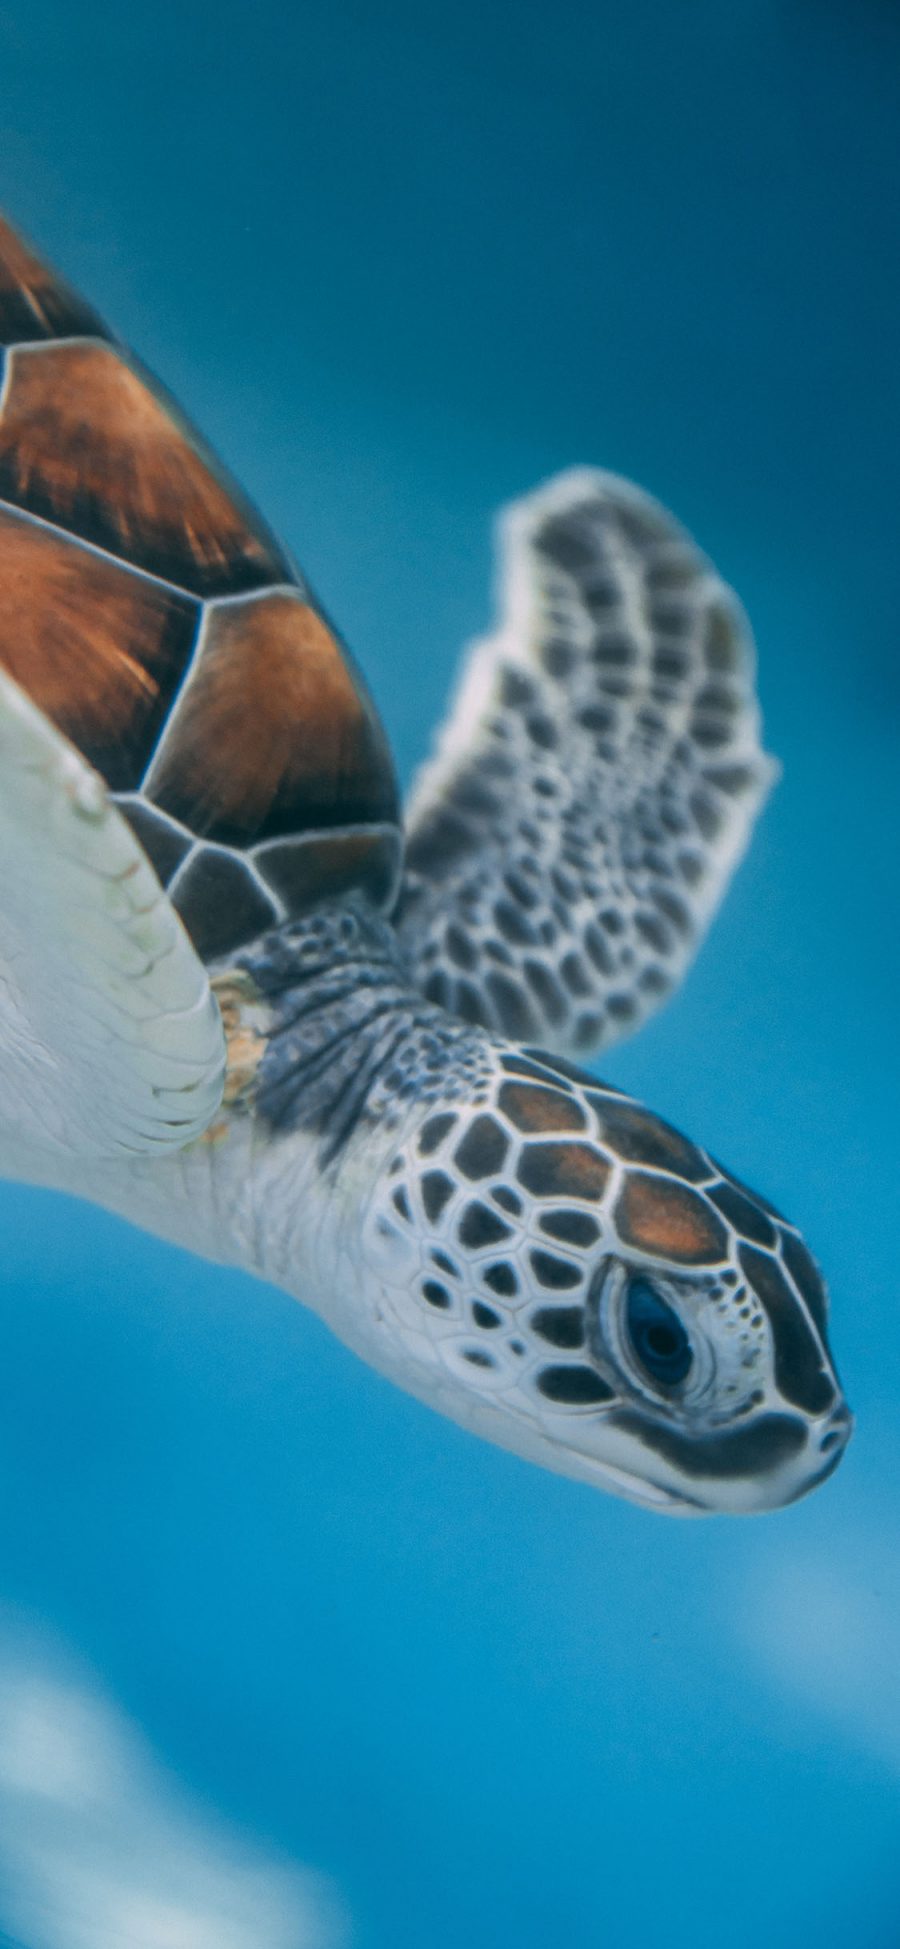 [2436×1125]海龟 海洋生物 遨游 长寿 苹果手机壁纸图片